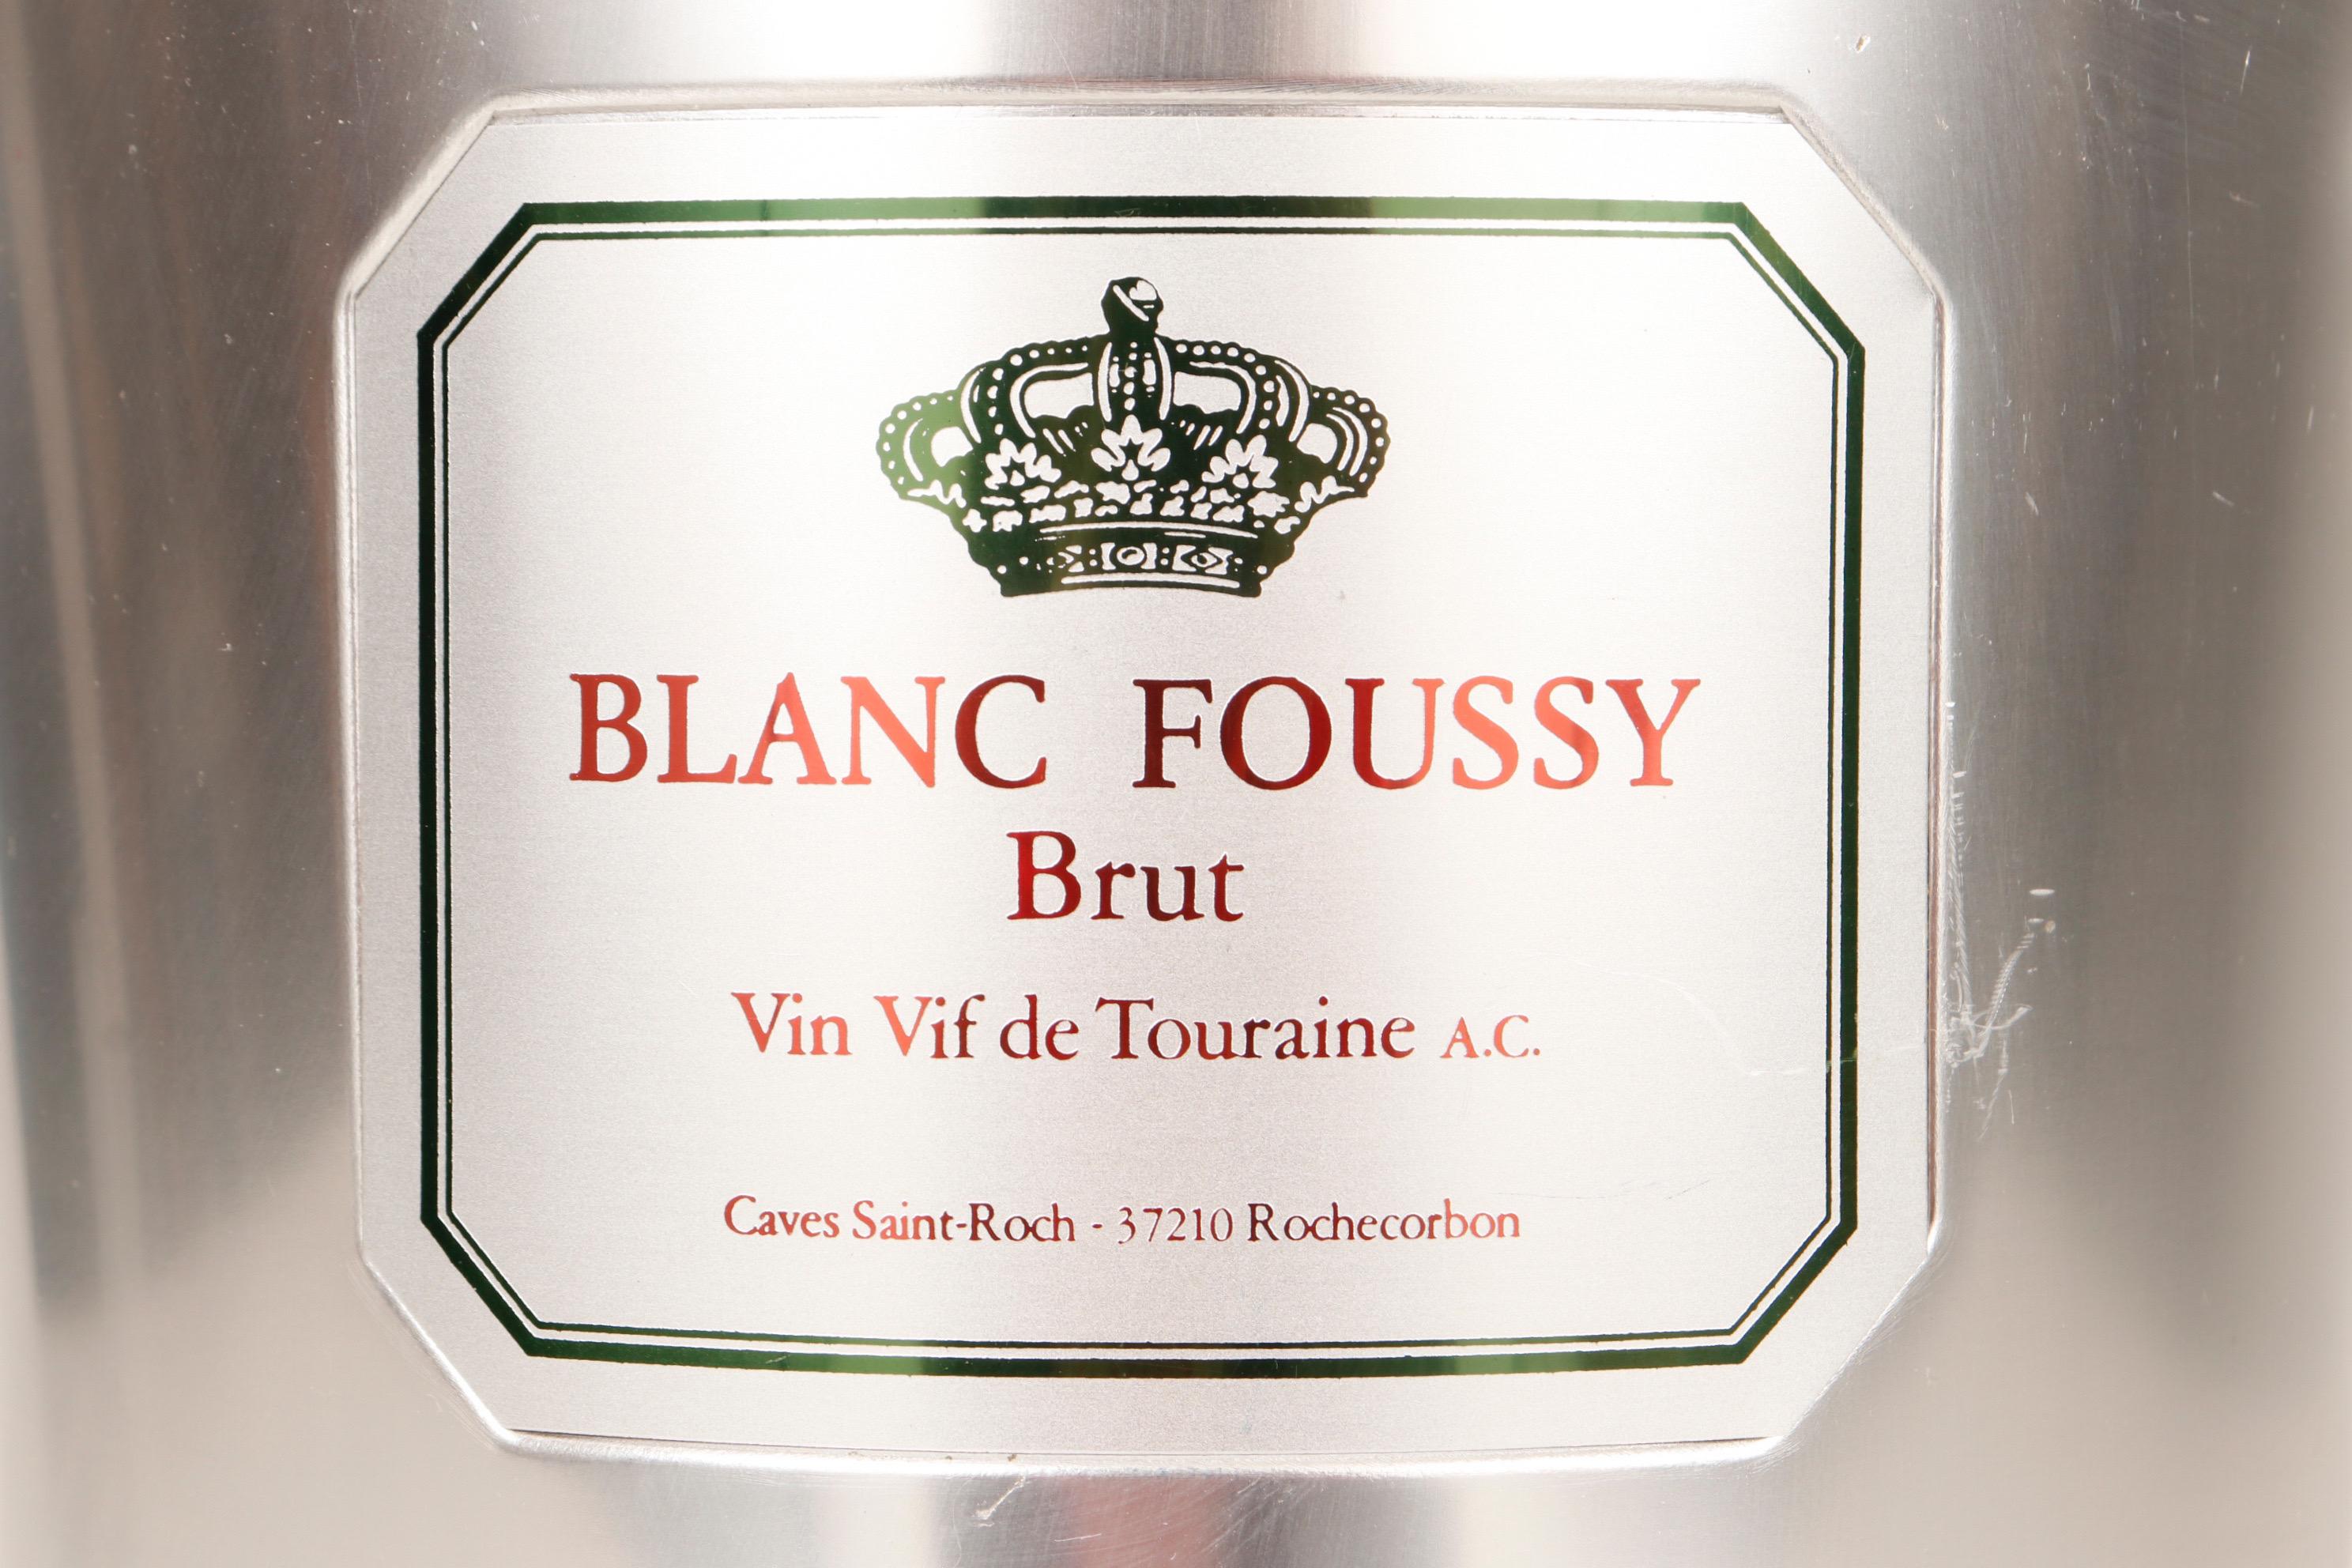 Un seau de Champagne Blanc Foussy Brut. Fabriqué en aluminium, le seau est doté d'une poignée ronde de chaque côté. Devant, une plaque indique 